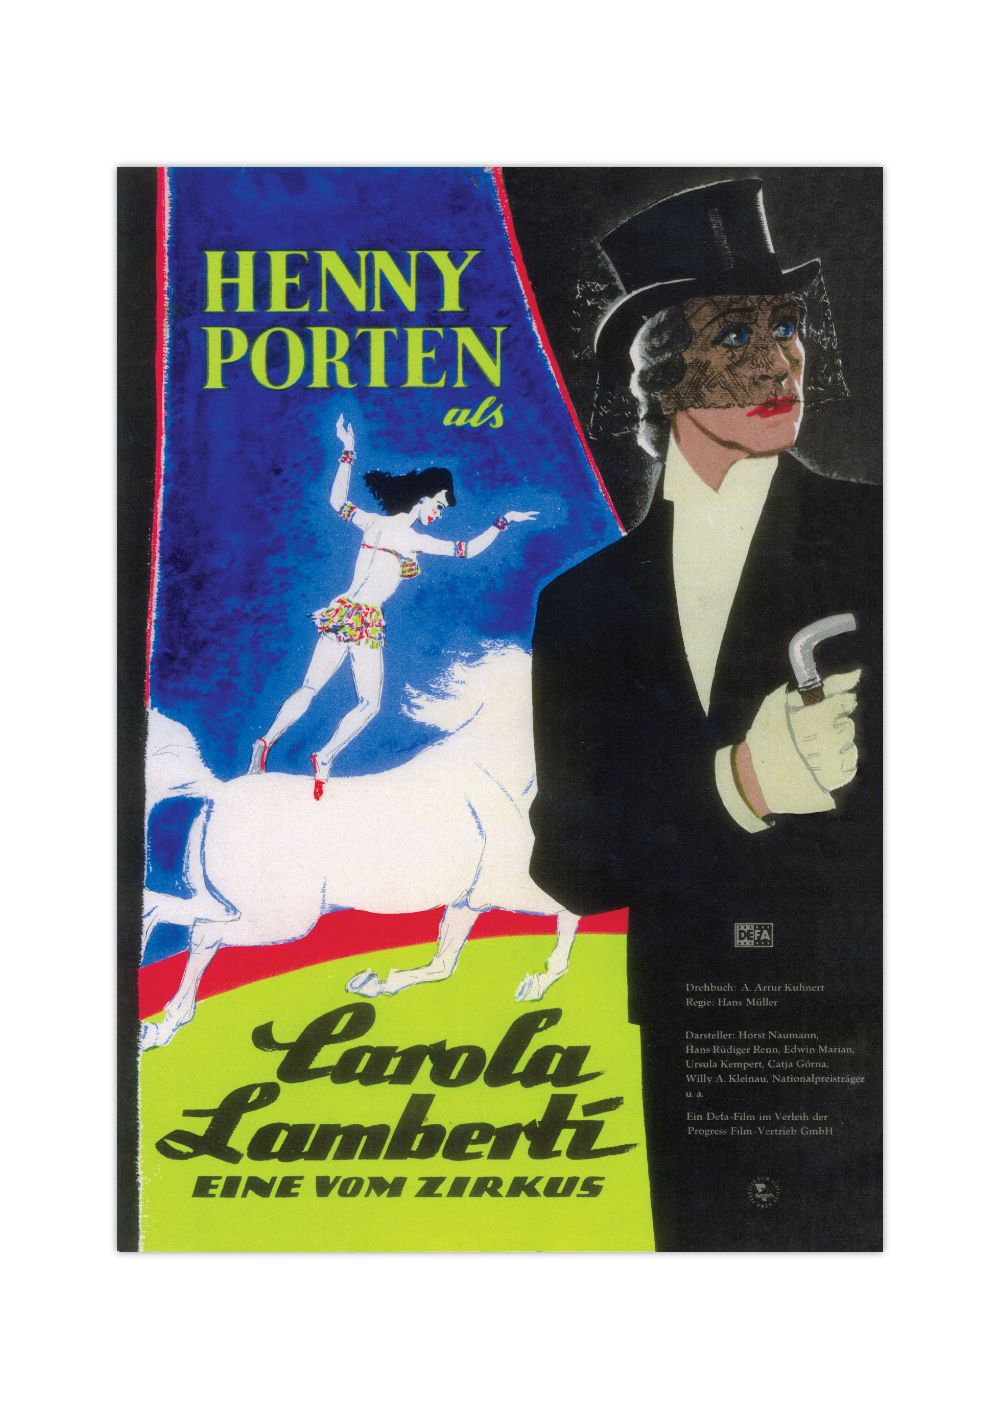 Bei dem Poster handelt es sich um den Nachdruck eines Filmplakates aus der DDR zum deutschen Film "Carola Lamberti – Eine von Zirkus". 